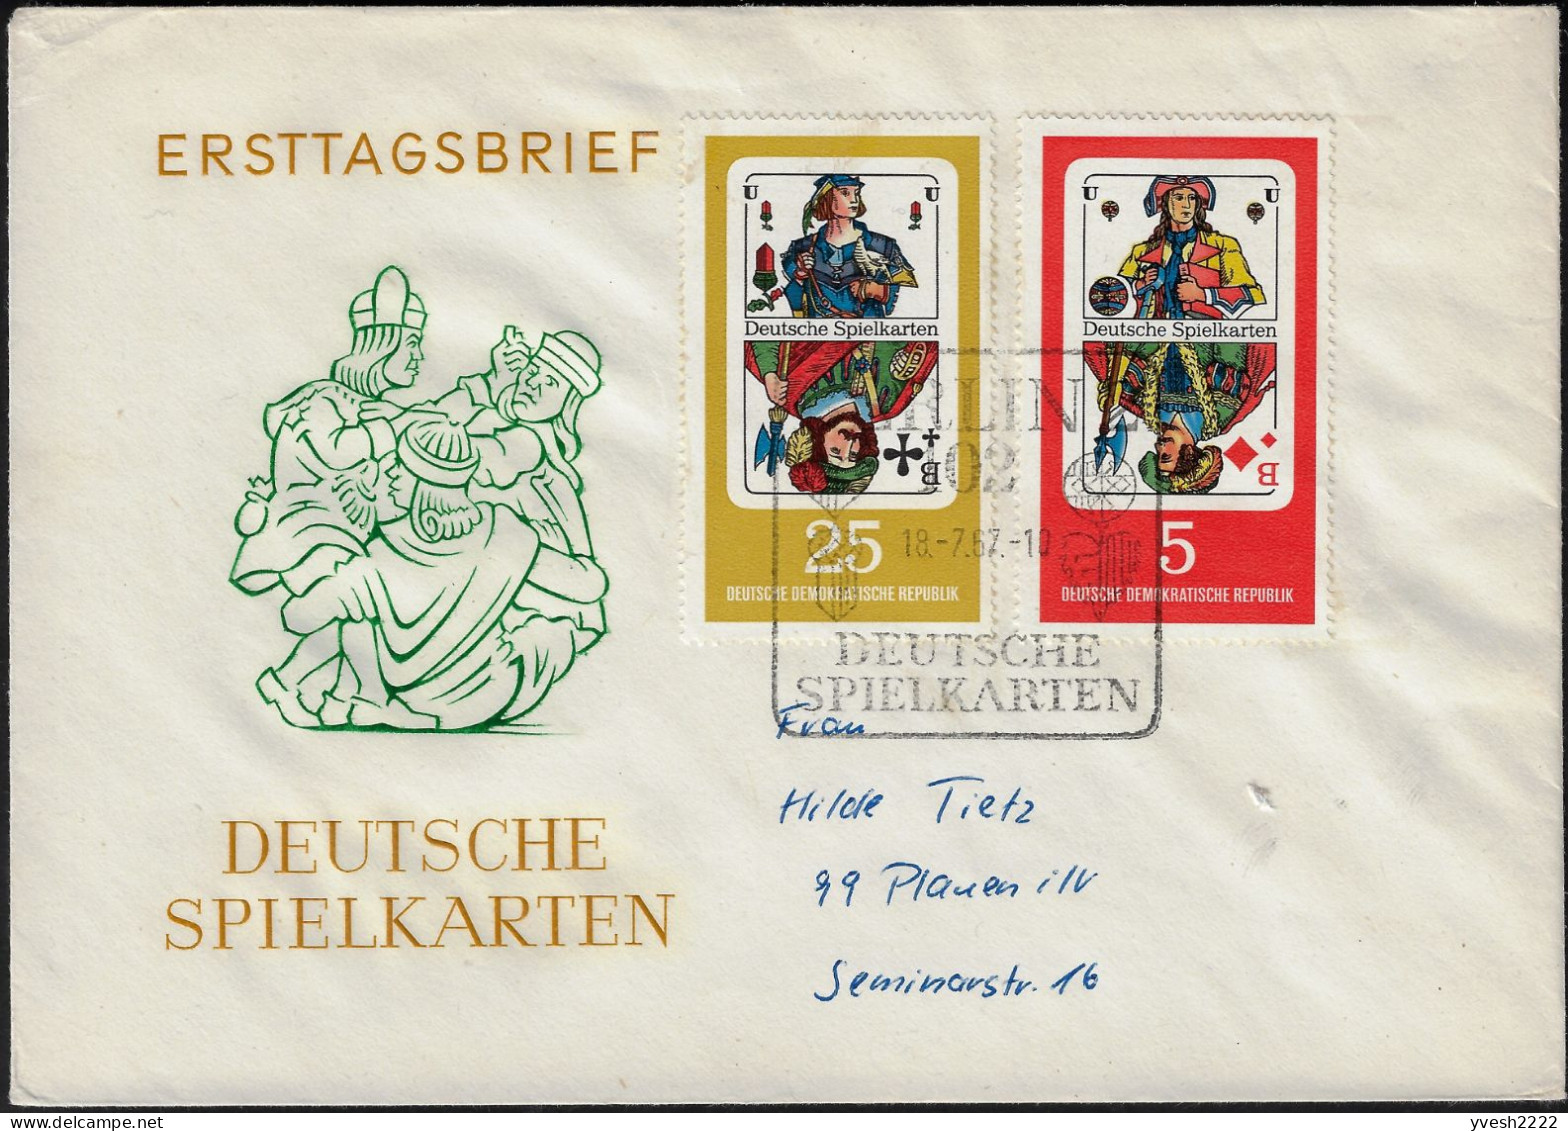 Allemagne Démocratique 1967 Y&T 995 à 998 Sur FDC. Cartes à Jouer. Valets De Carreau, De Coeur, De Pique Et De Trèfle - Ohne Zuordnung